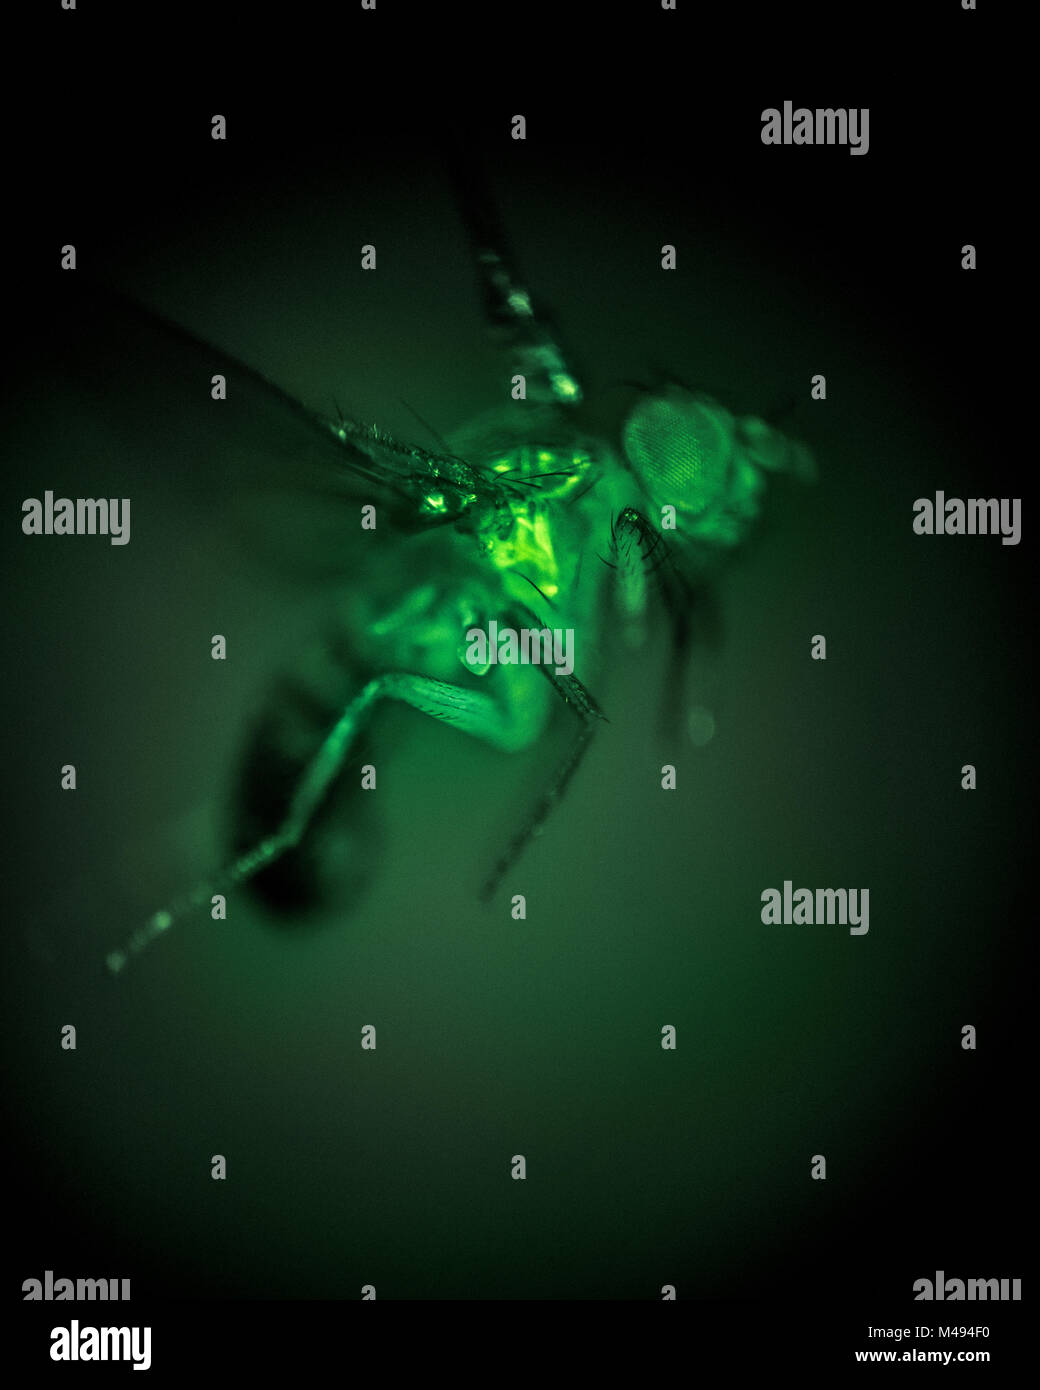 Velocità elevata esposizione di una mosca della frutta (Drosophila melanogaster) prelevata attraverso un microscopio. In questa immagine i muscoli di volo esprimono una proteine geneticamente ingegnerizzate GCaMP chiamato, che genera fluorescenza verde in presenza di ioni calcio. A causa della concentrazione di calcio aumenta in muscoli come essi sono attivati, la fluorescenza fornisce una misurazione diretta dell'attività muscolare. Istituto di Tecnologia della California, USA, dicembre 2016. Foto Stock